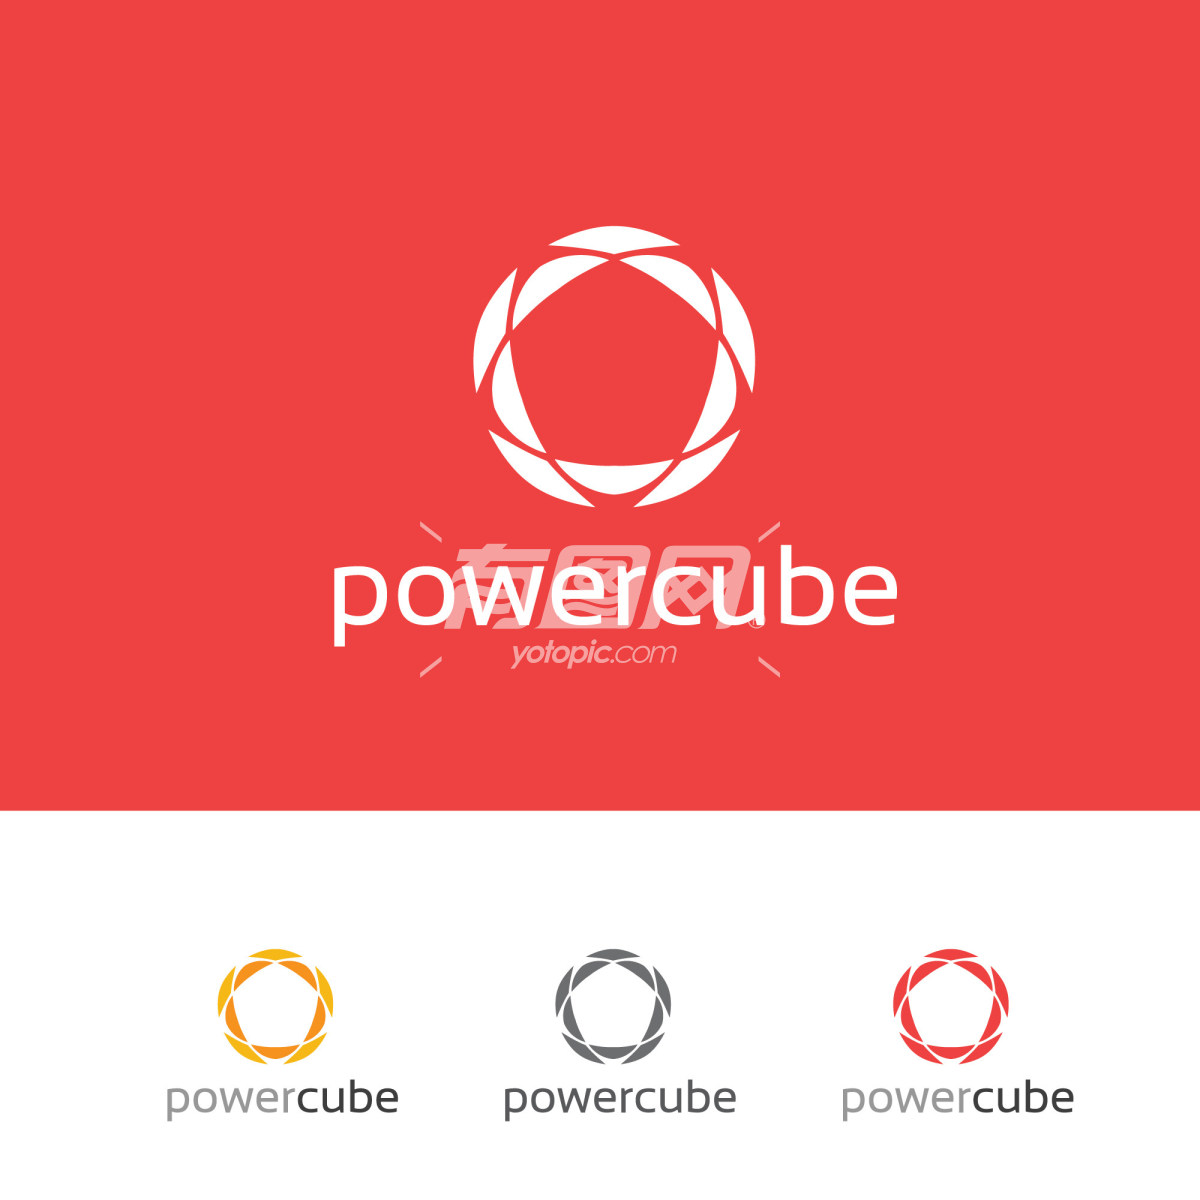 powercube公司标志